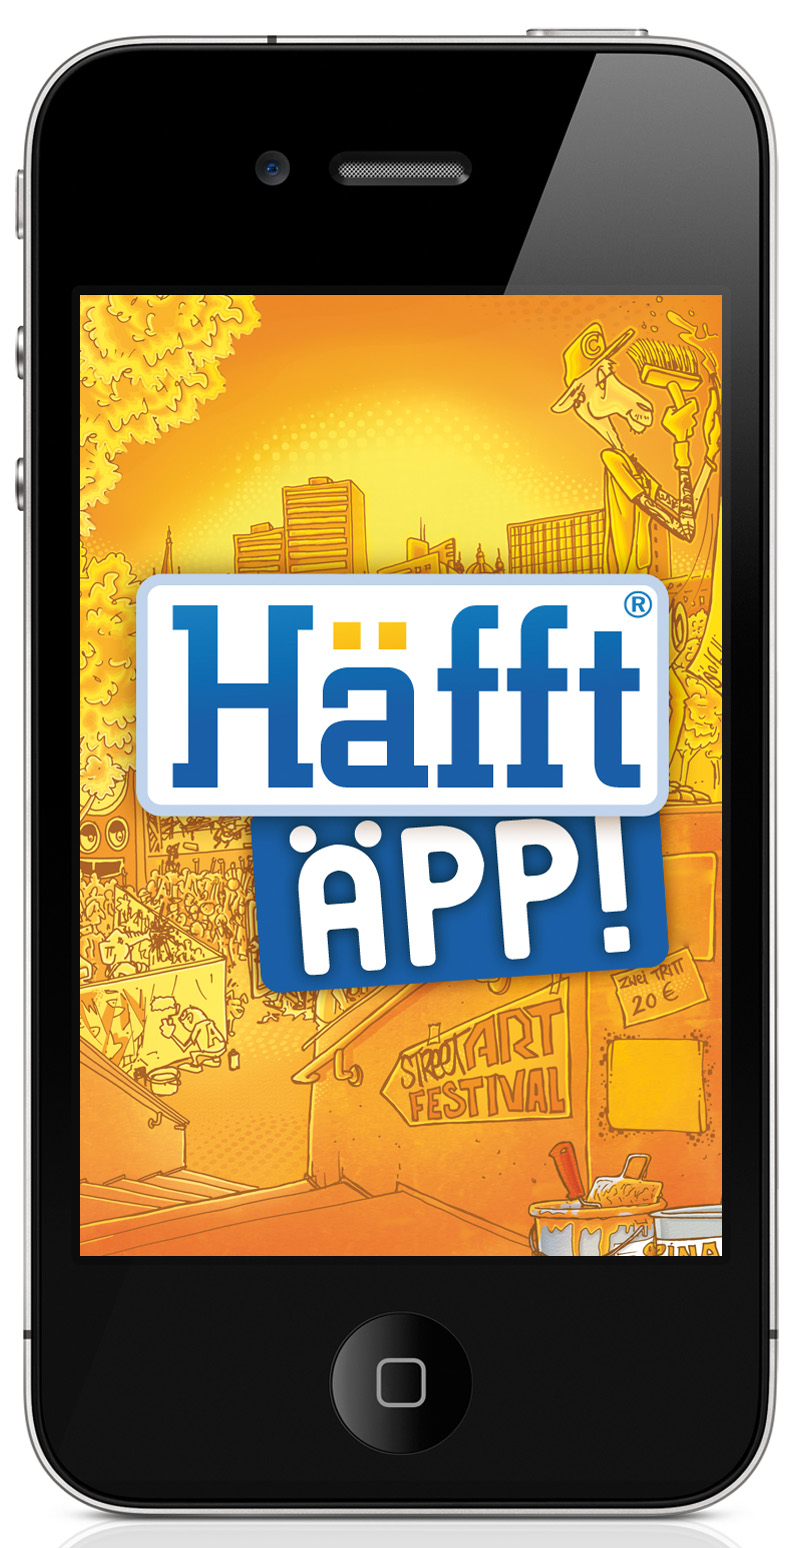 Haefft_Aepp_Packshot_App_Startscreen